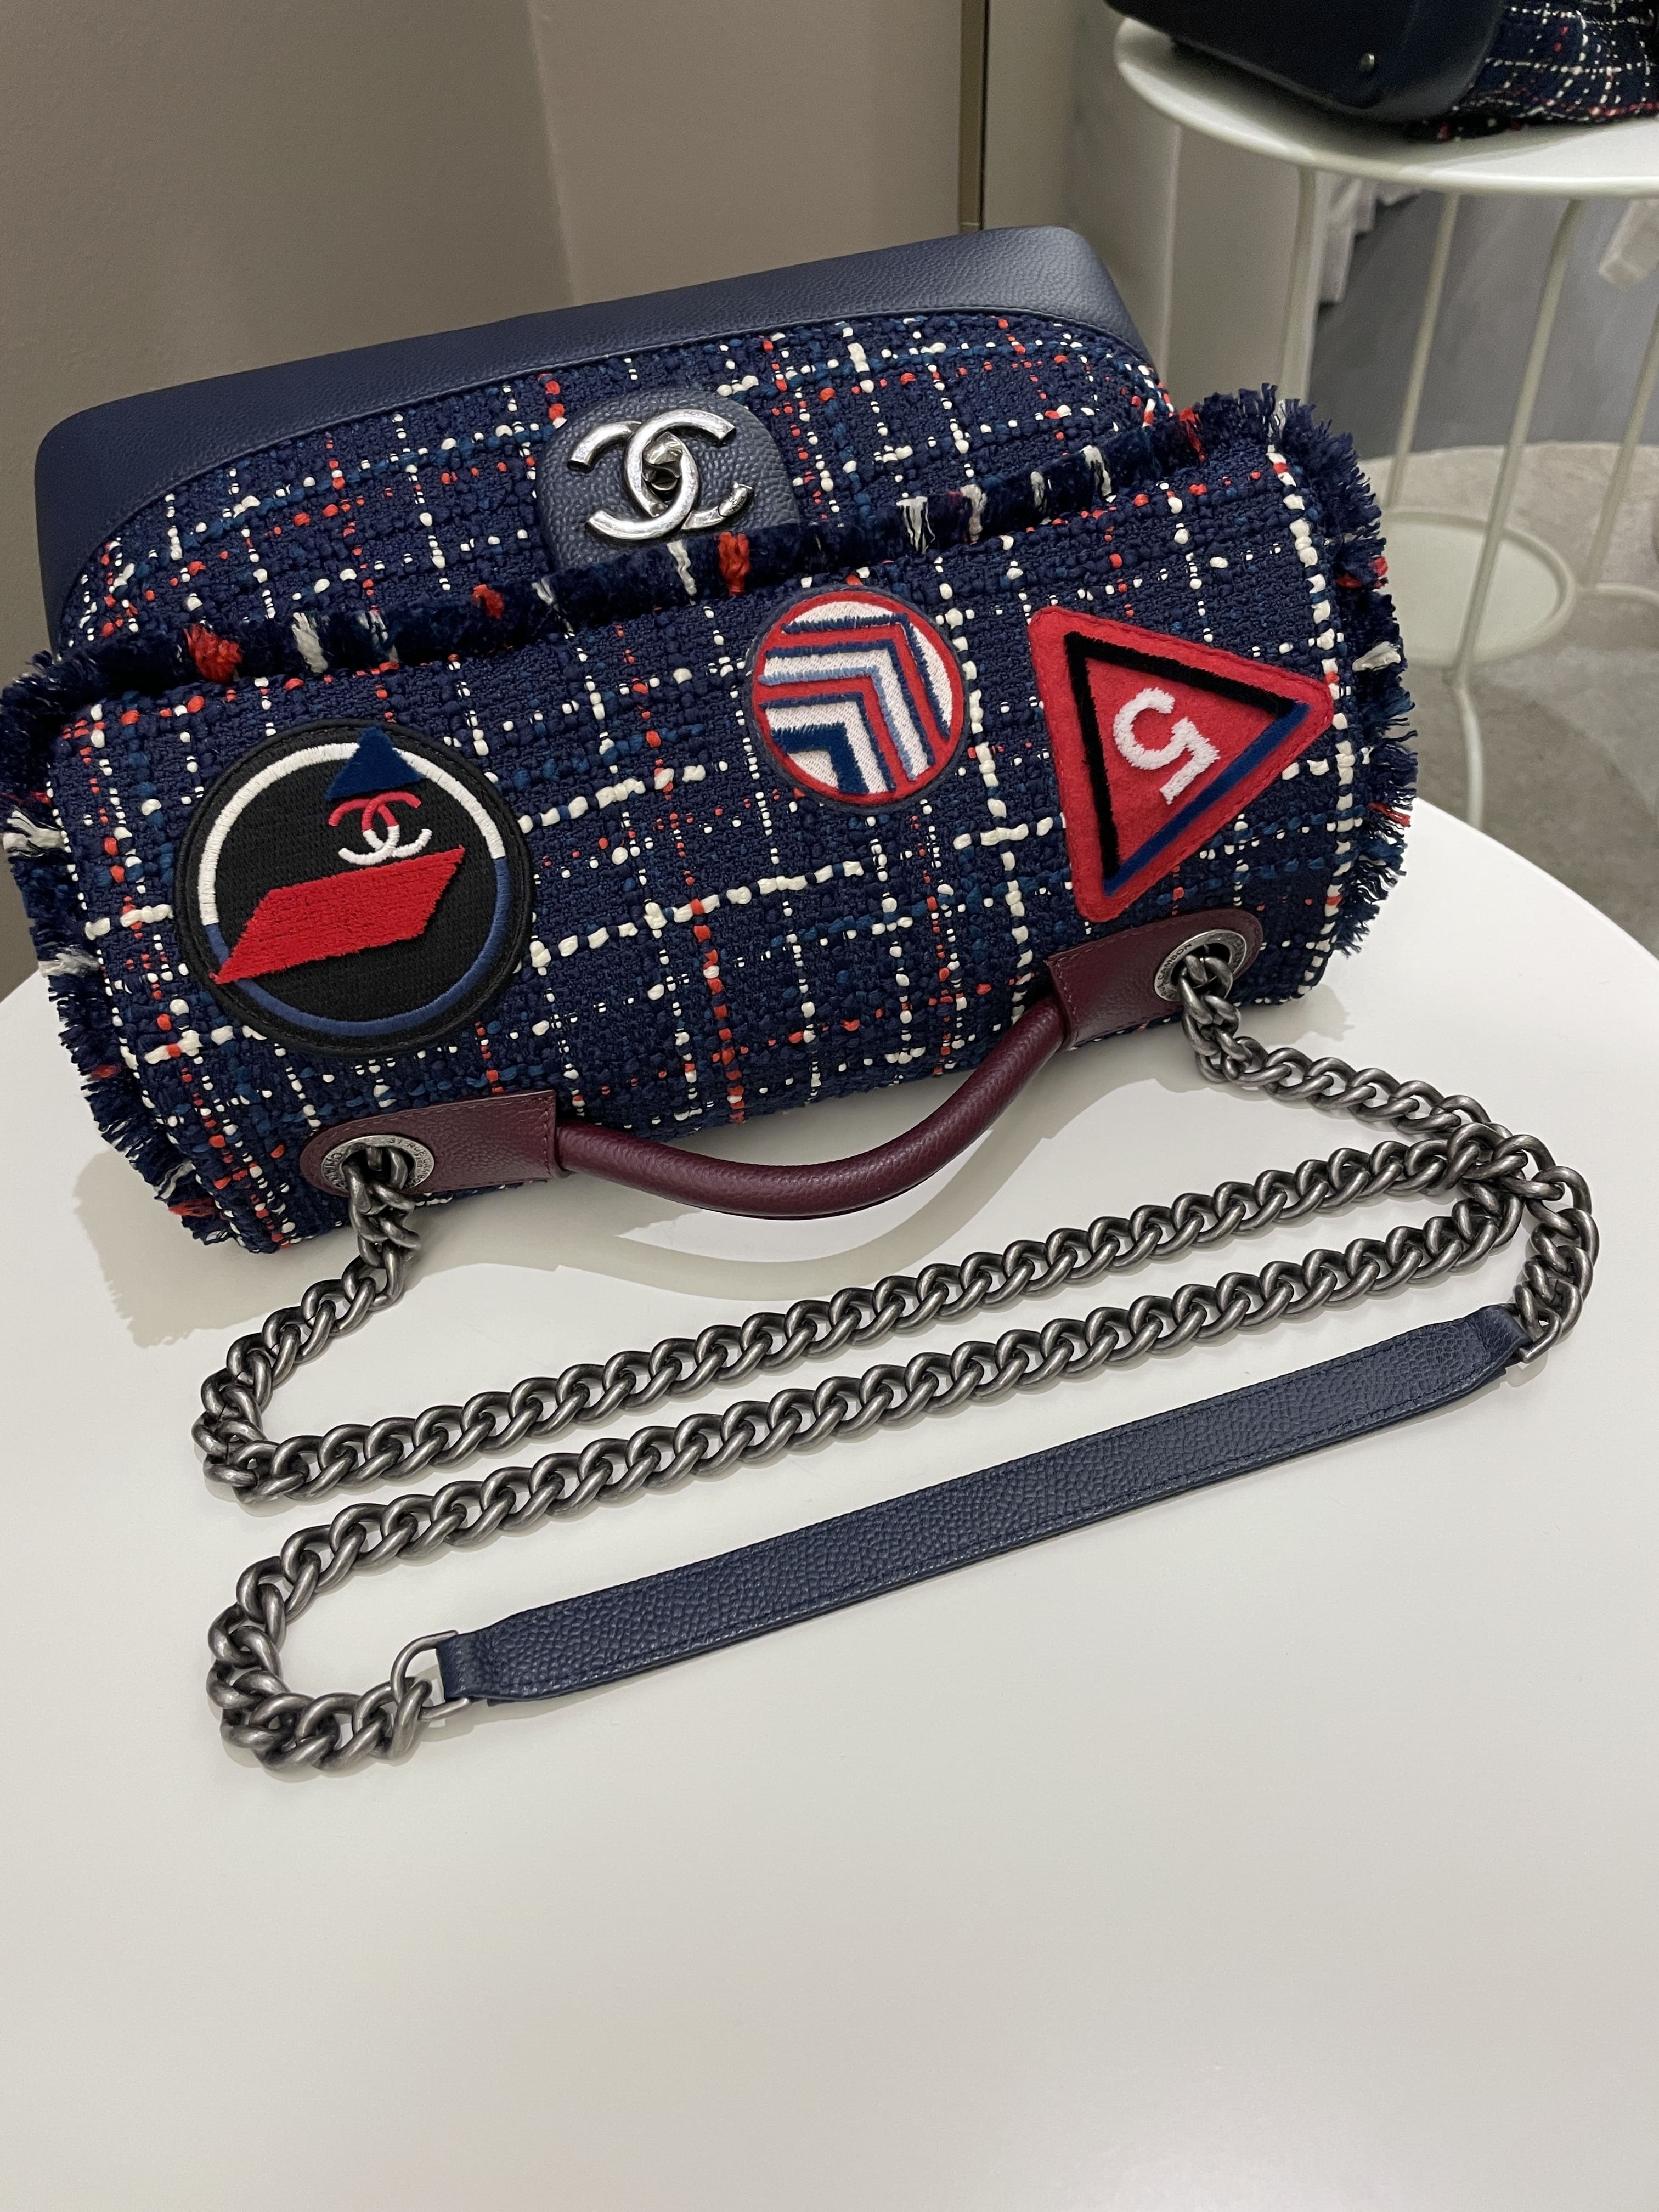 Chanel Airline Tweed Flap Bag Multicolor Tweed